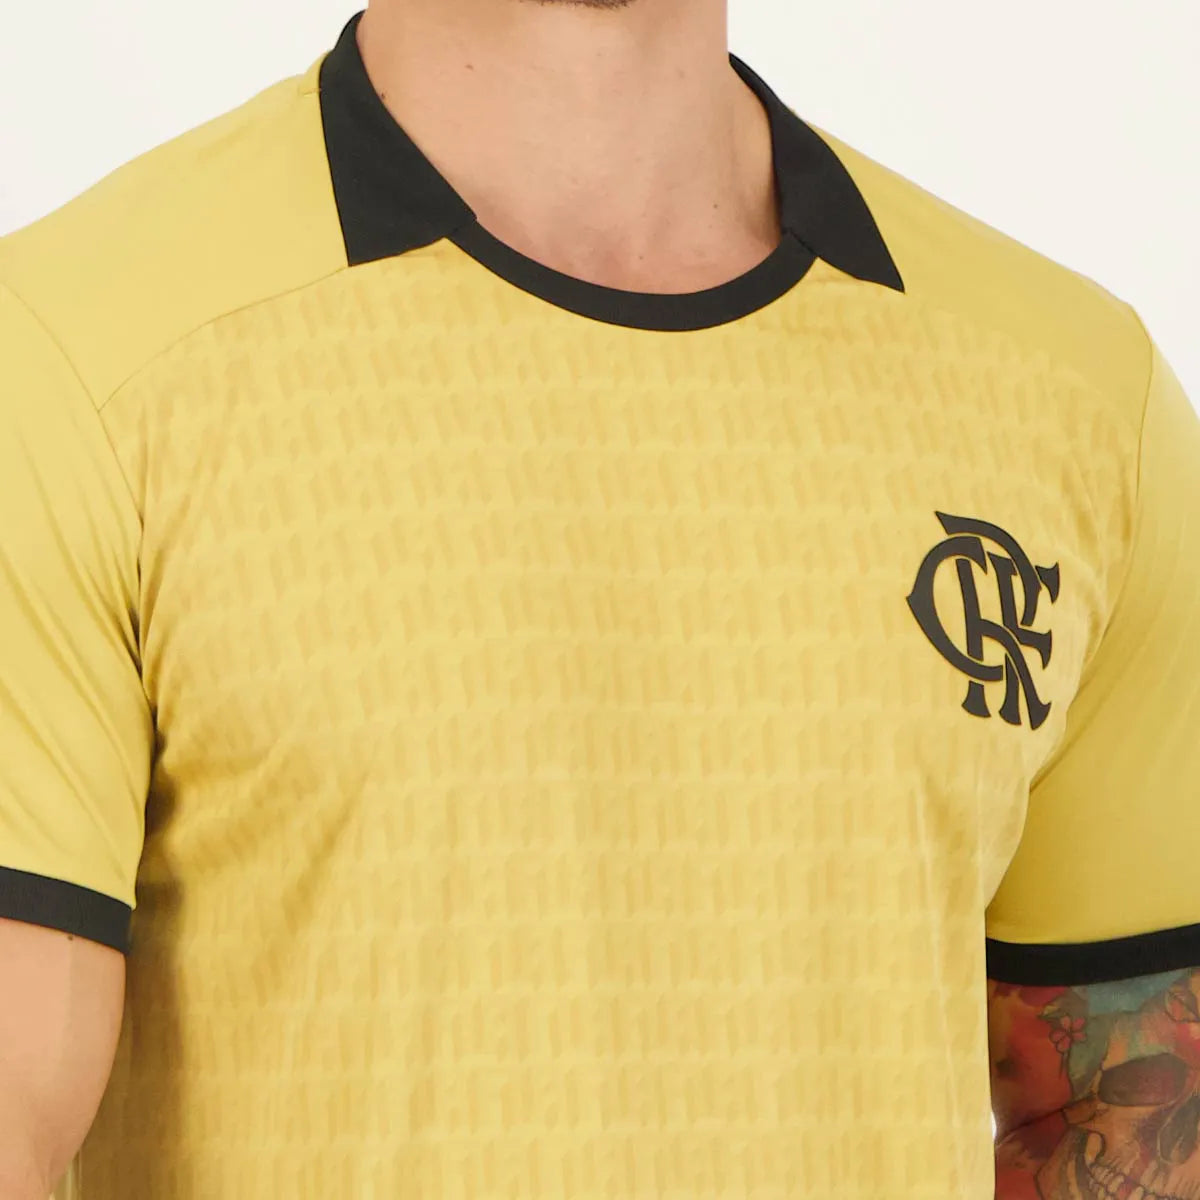 Camisa Flamengo Chalkboard Dourada